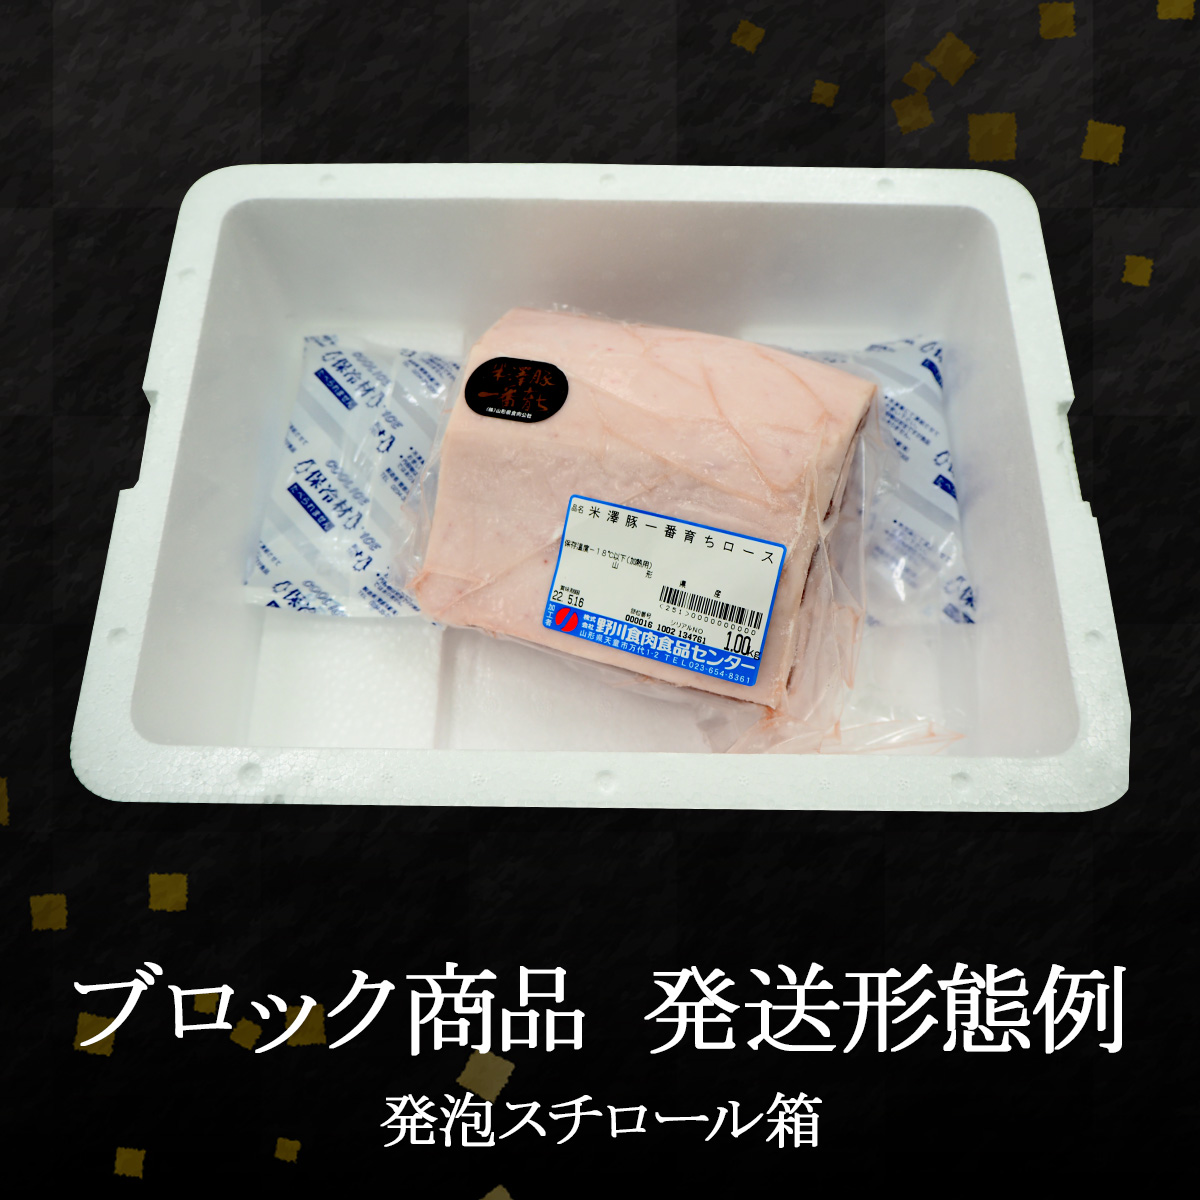 激安特価品激安特価品米澤豚一番育ちばら ブロック 1kg チャーシュー 焼豚 角煮 豚肉